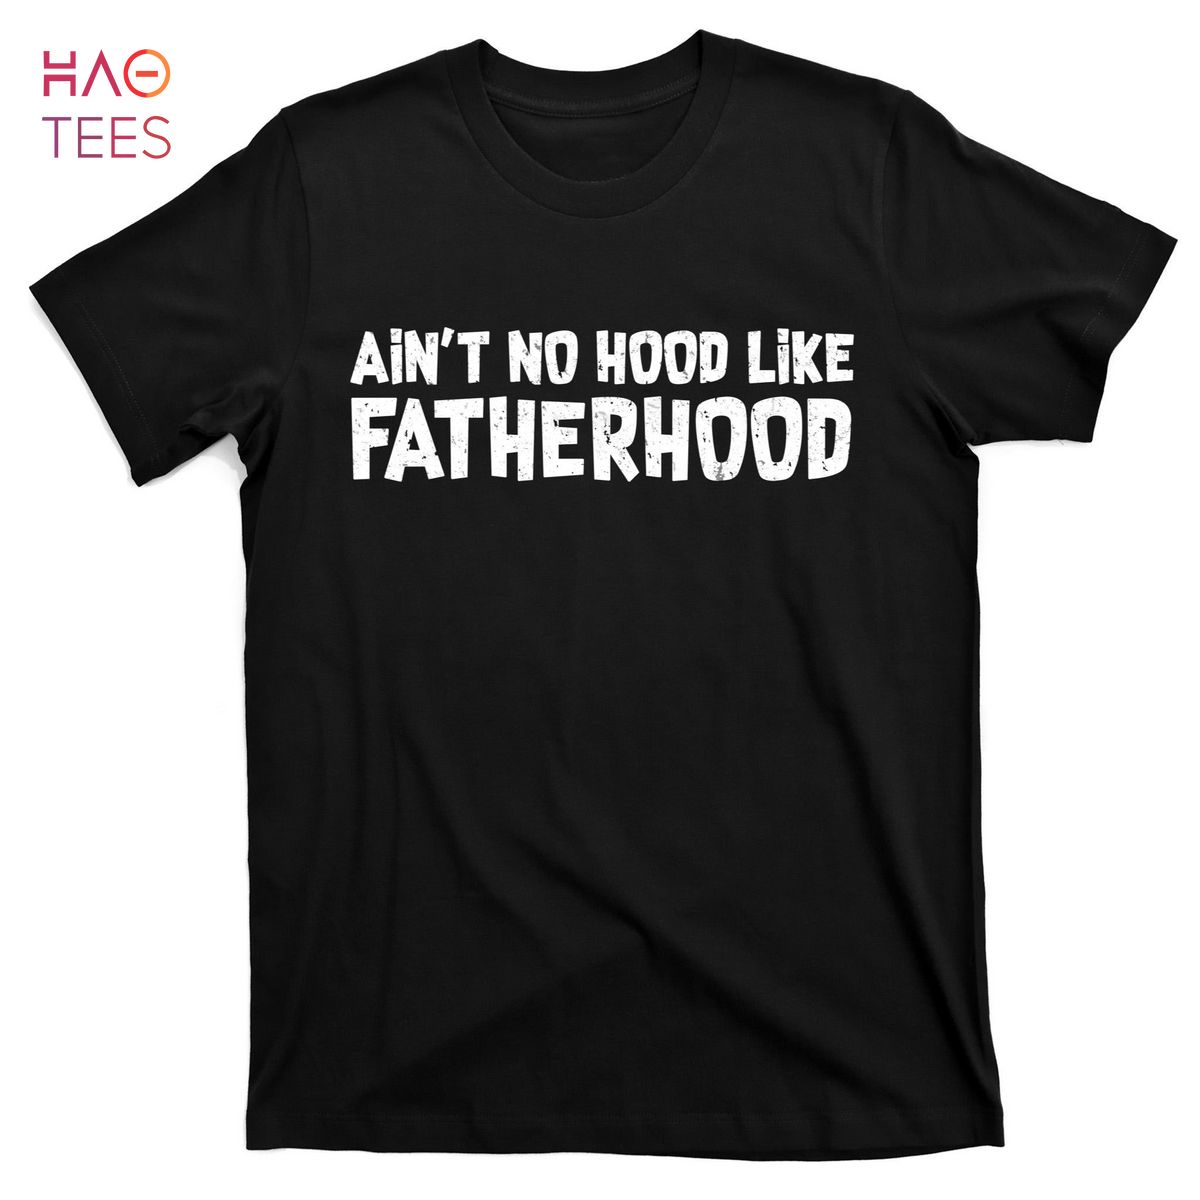 HOT Ain't No Hood Like Fatherhood T-Shirts